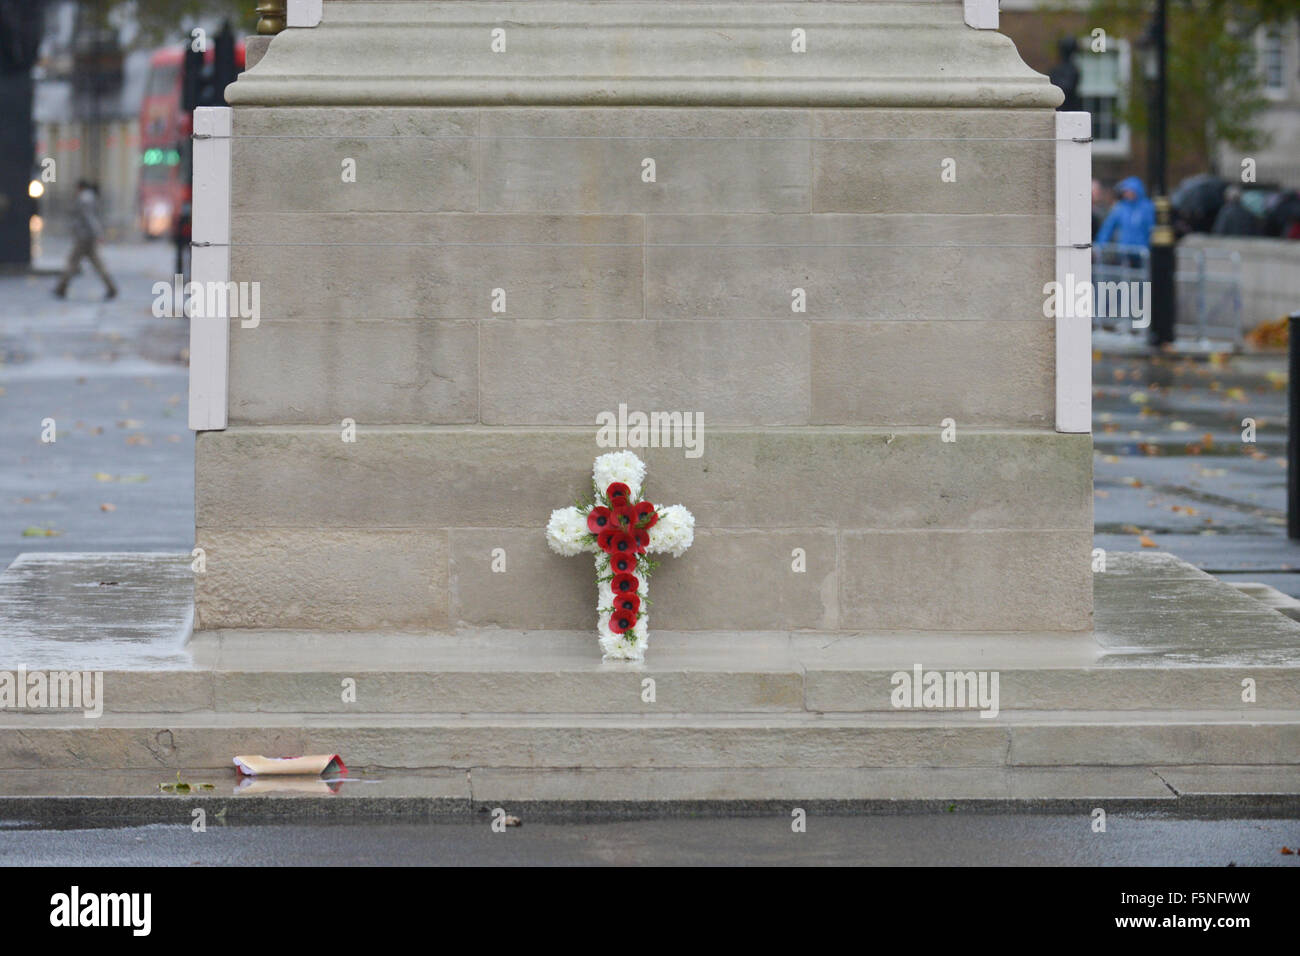 Whitehall, Londra, Regno Unito. 7 novembre 2015 le vedove di guerra' Association ricordo il servizio presso il cenotafio di Londra Foto Stock